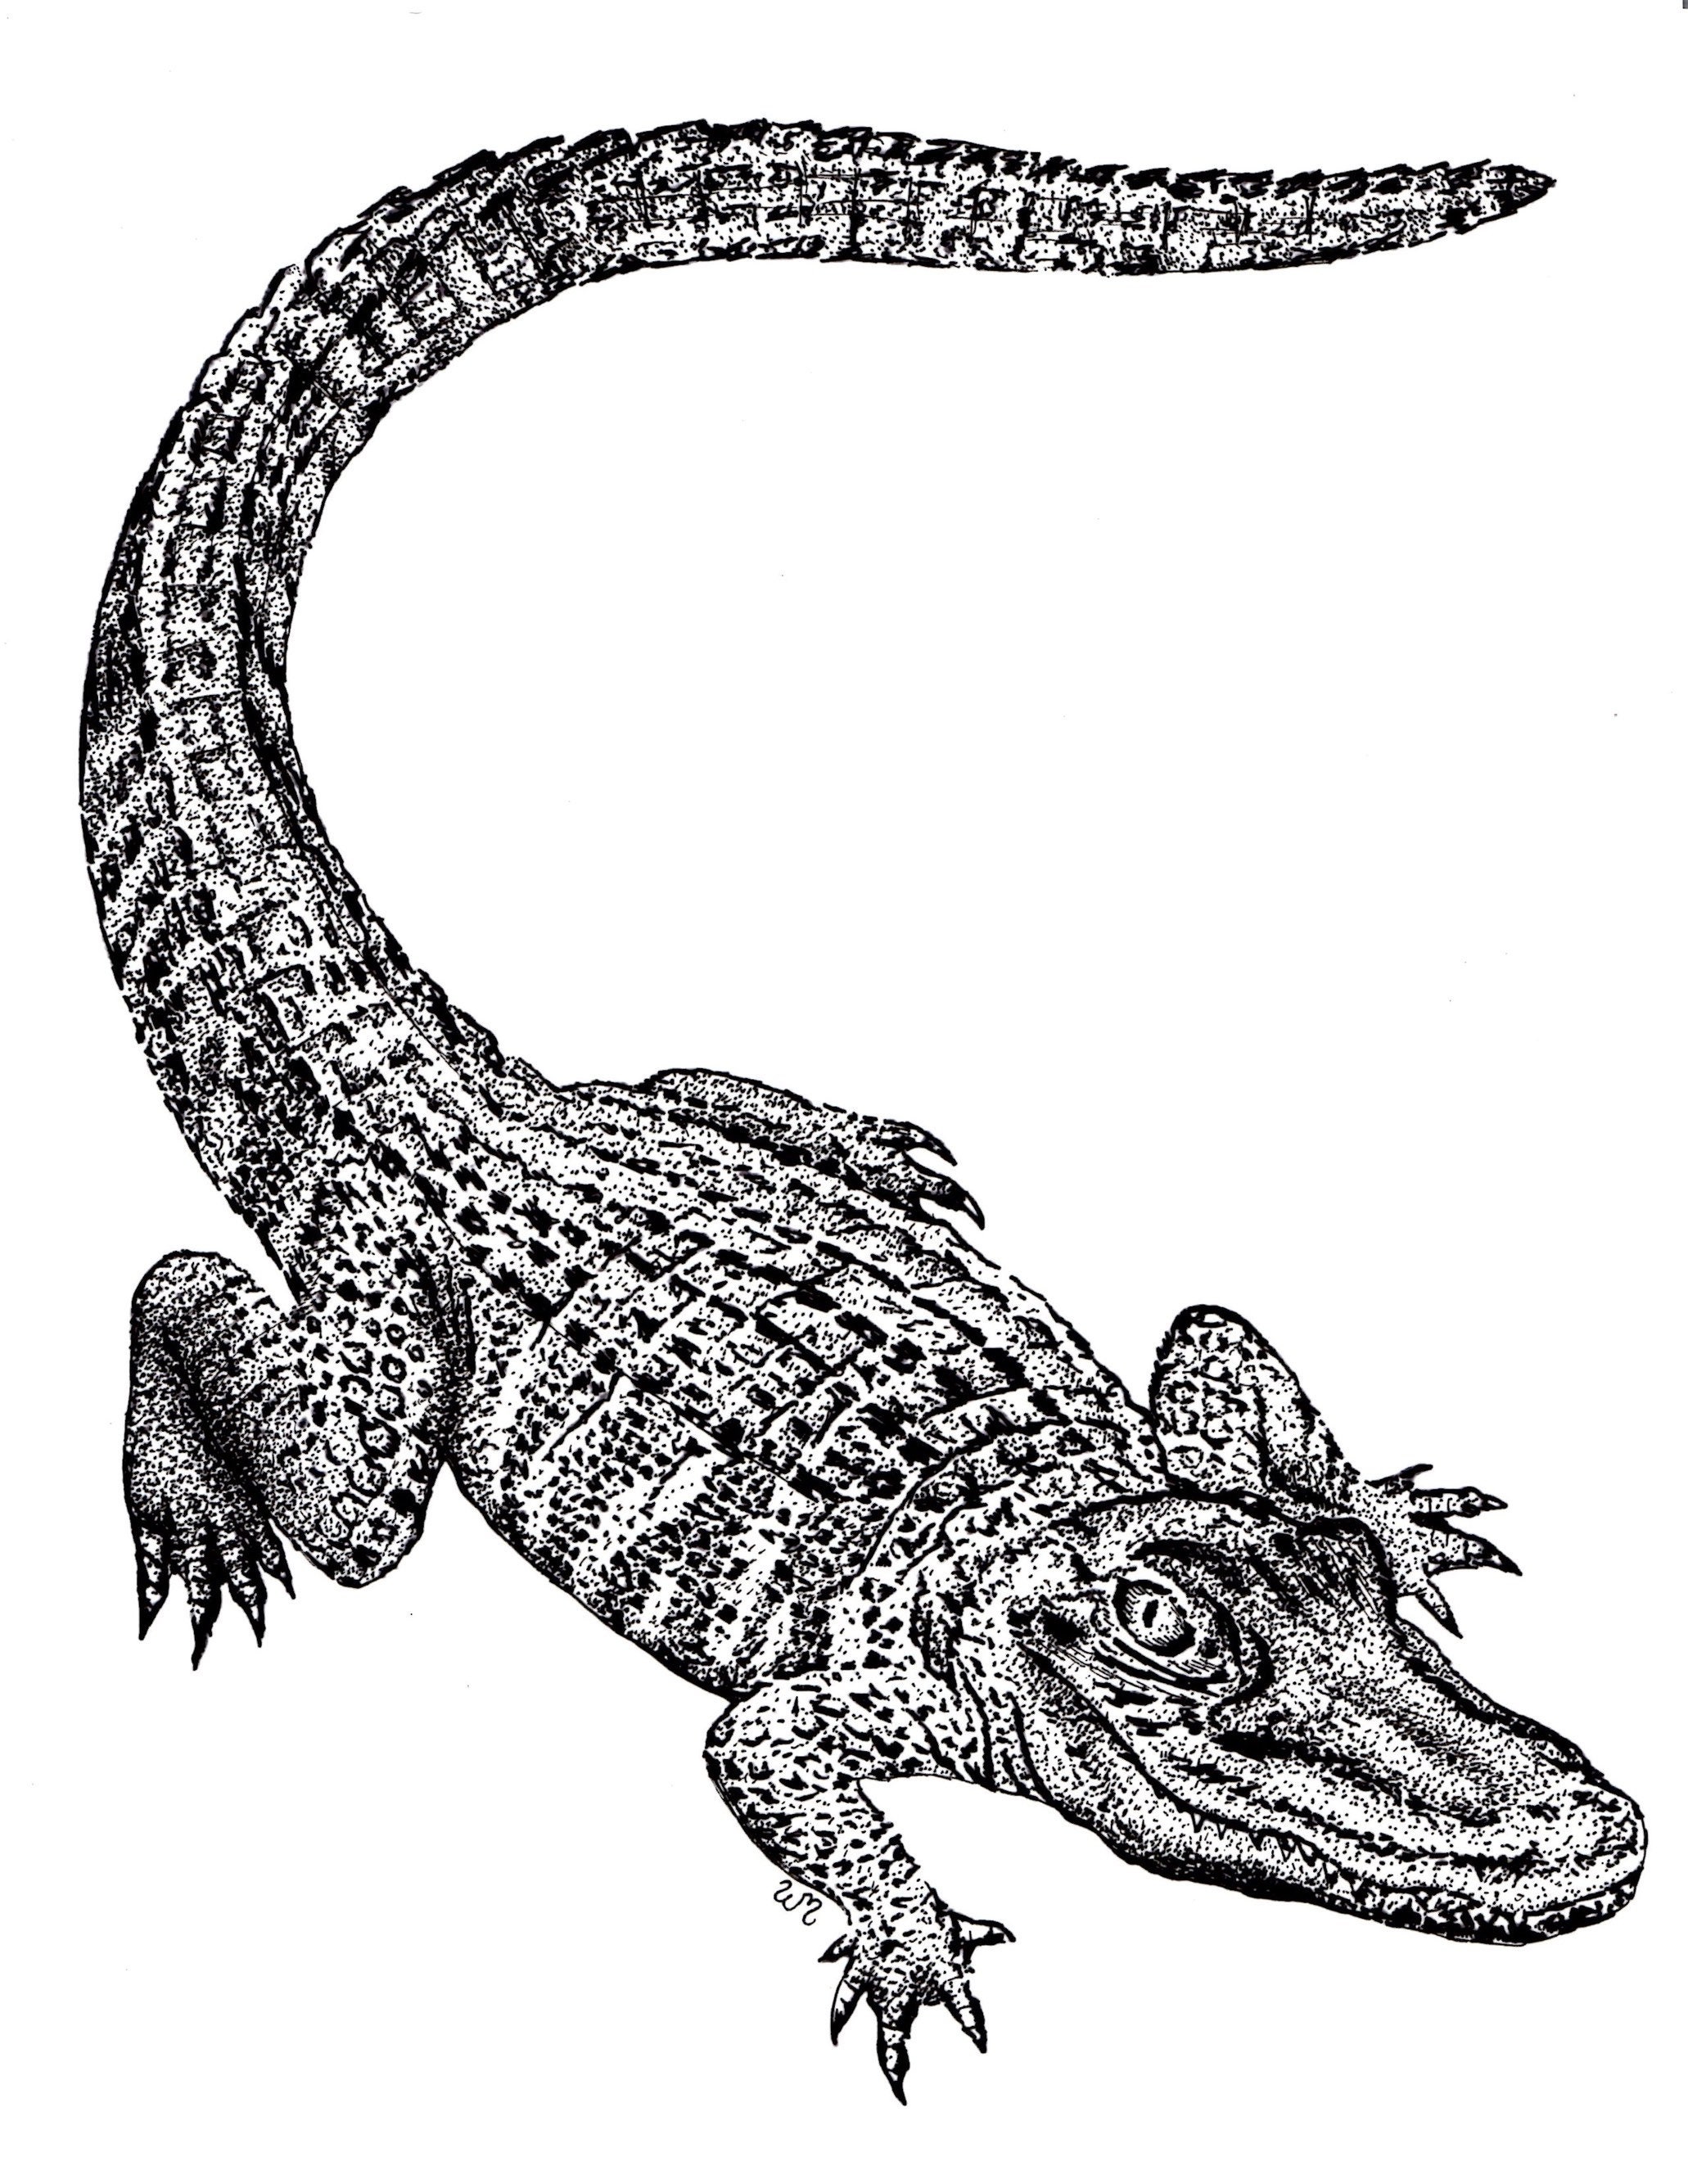 Крокодил на белом фоне